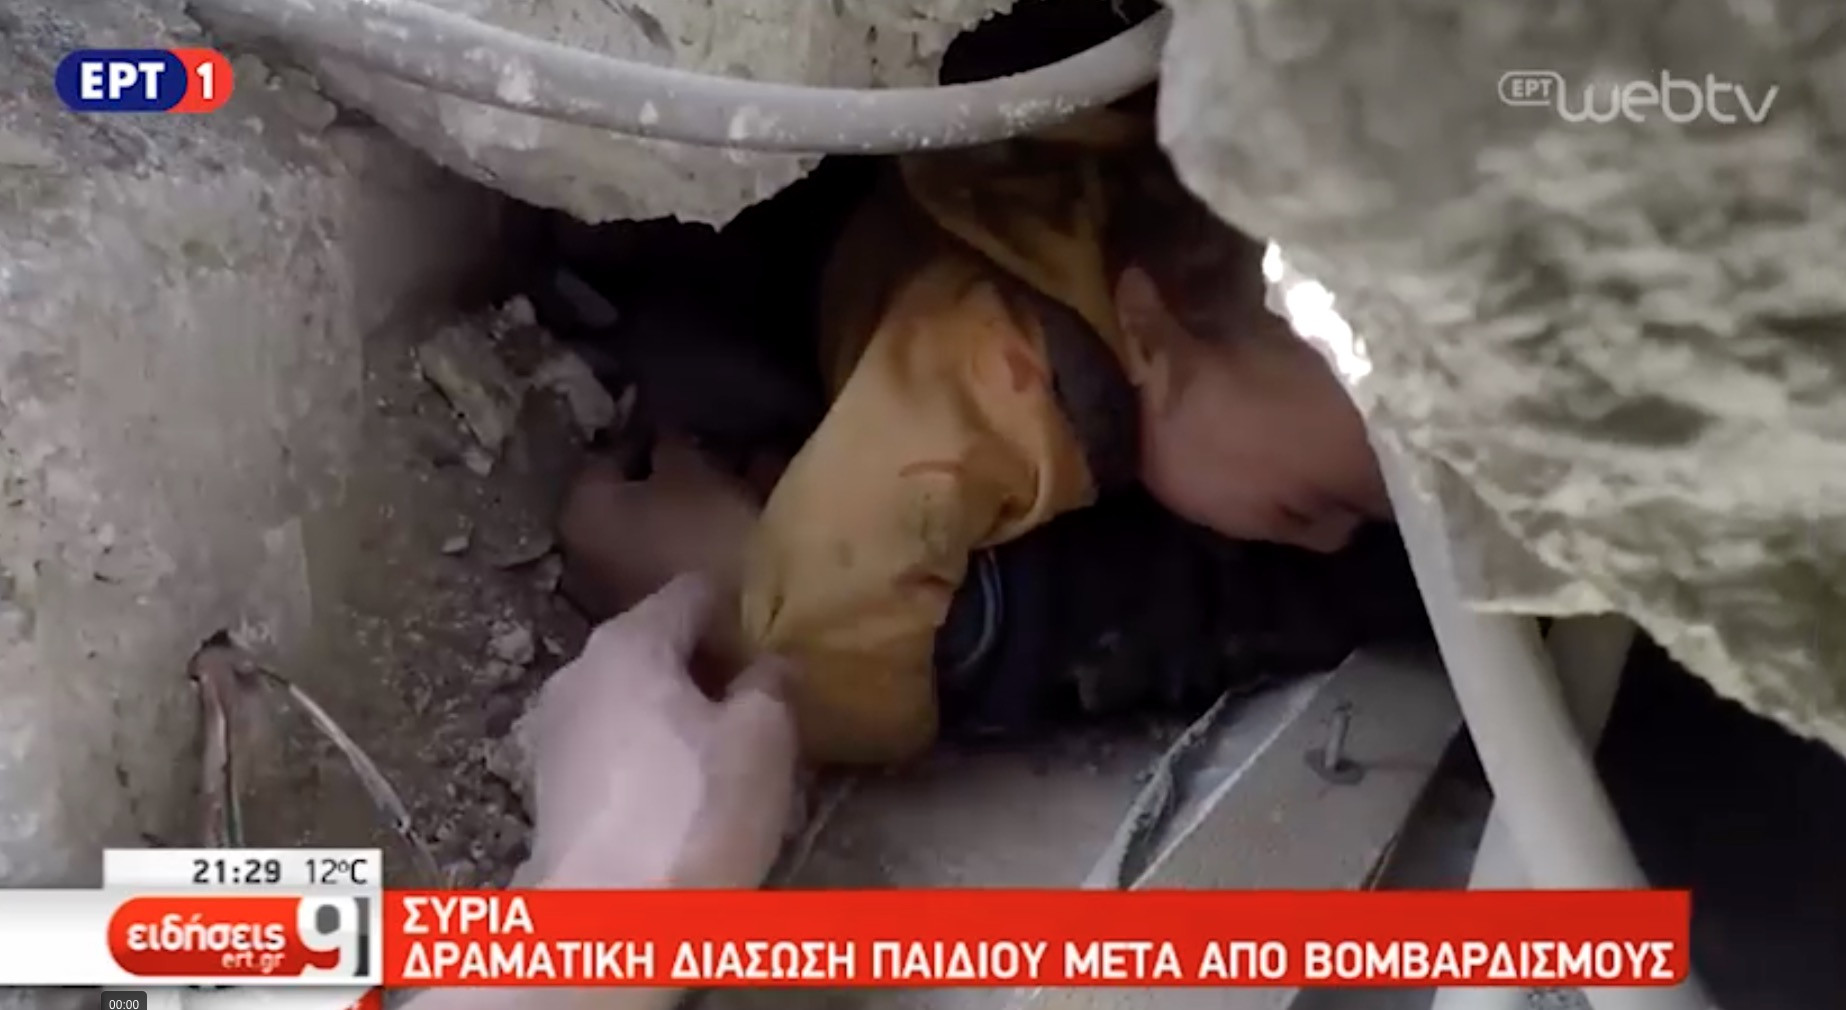 ΒΙΝΤΕΟ: Η δραματική διάσωση ενός μικρού παιδιού μετά από βομβαρδισμό στη Συρία